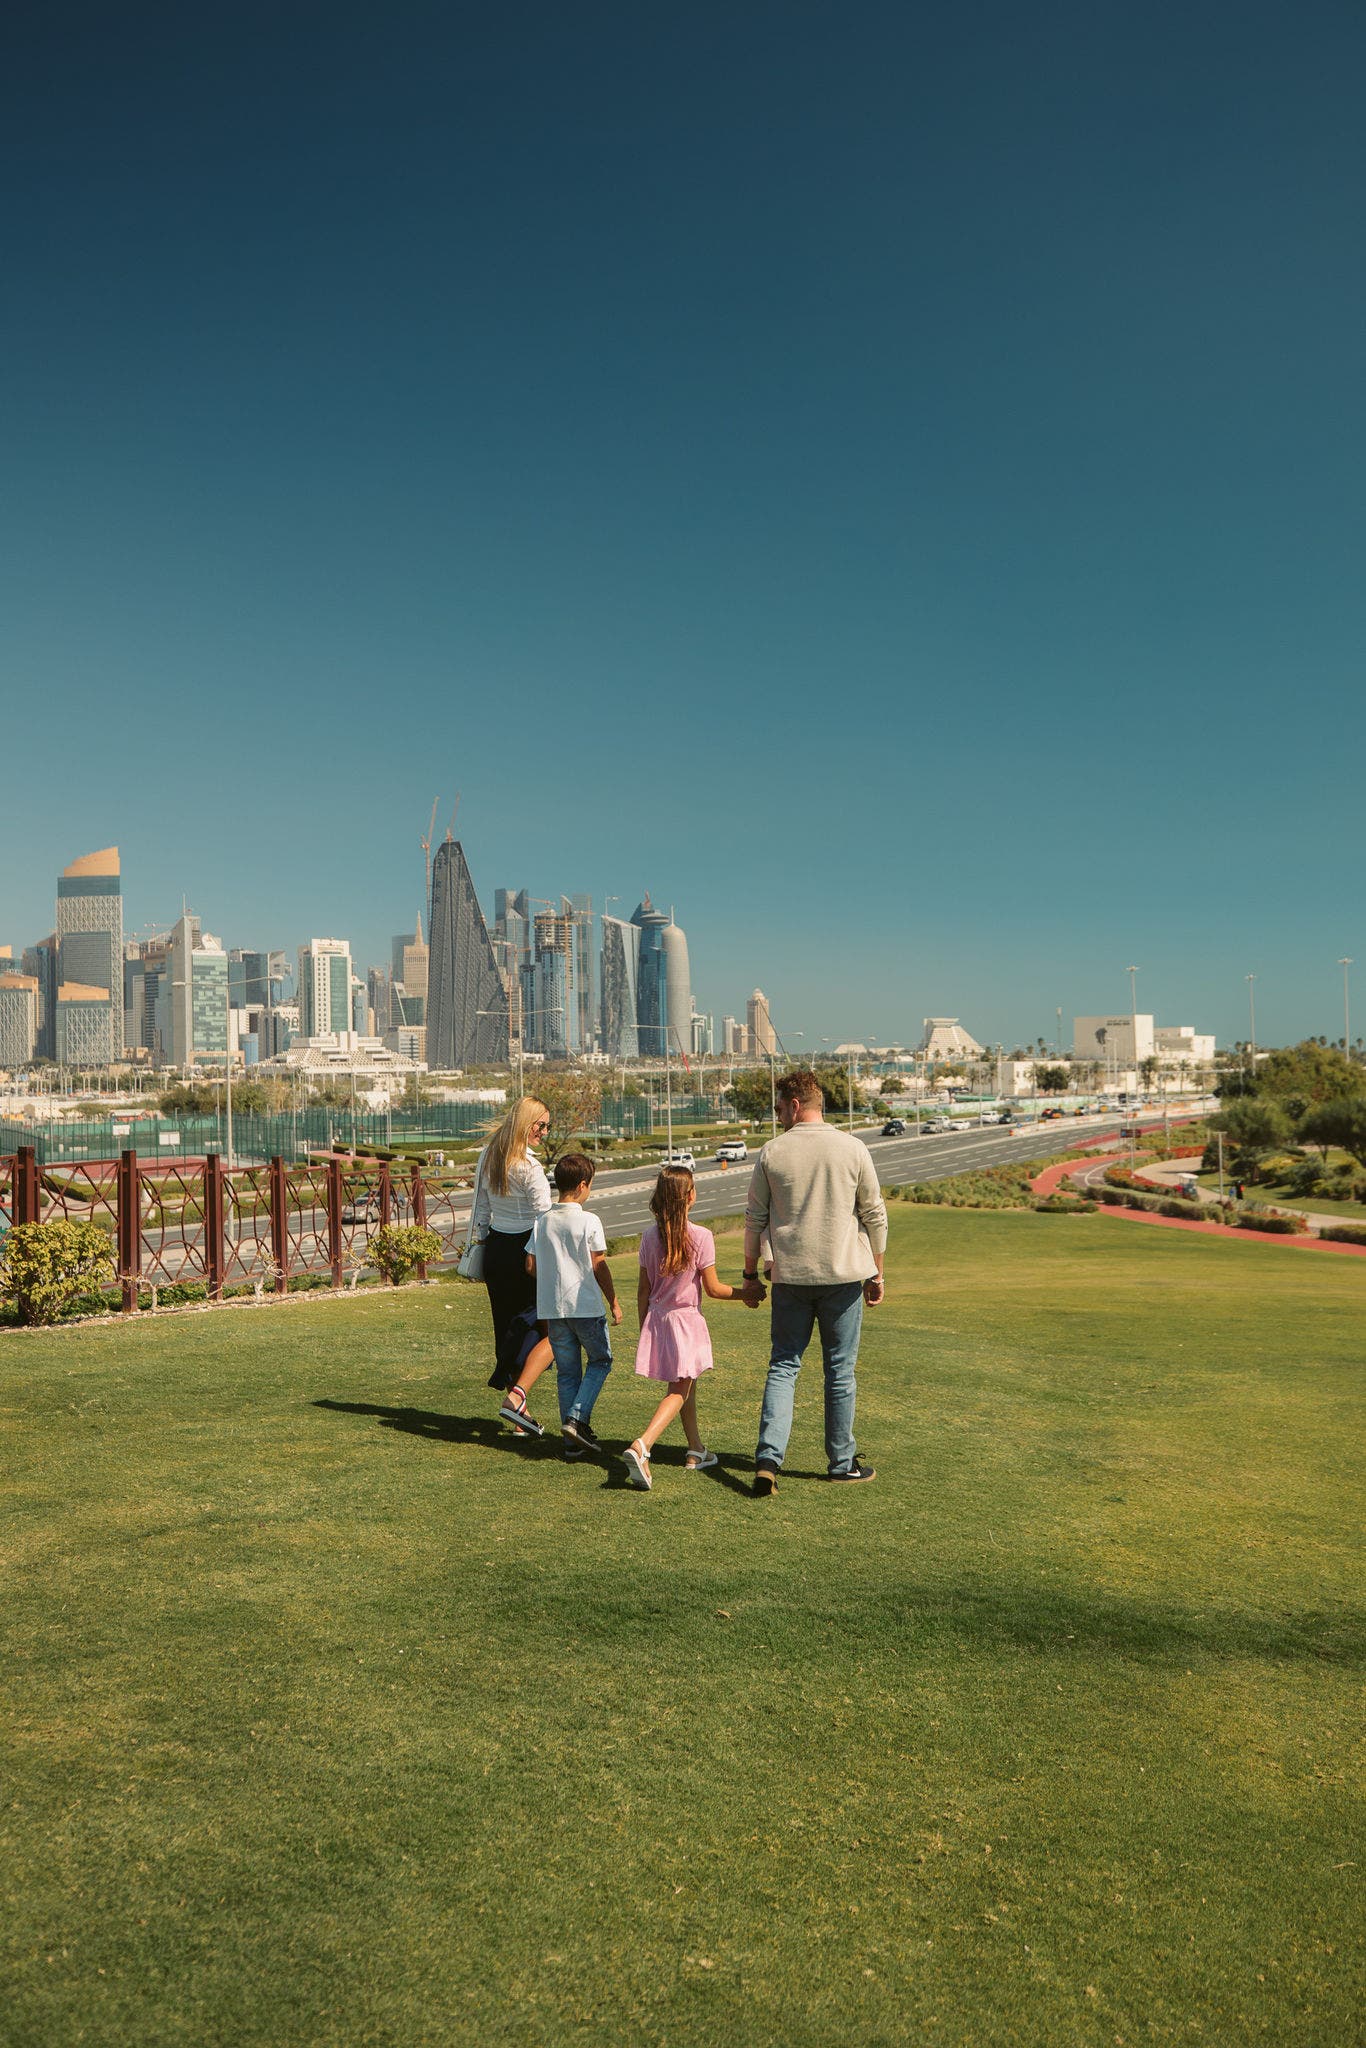 Al Bidda Park | Eine grüne Oase in der Hauptstadt Doha